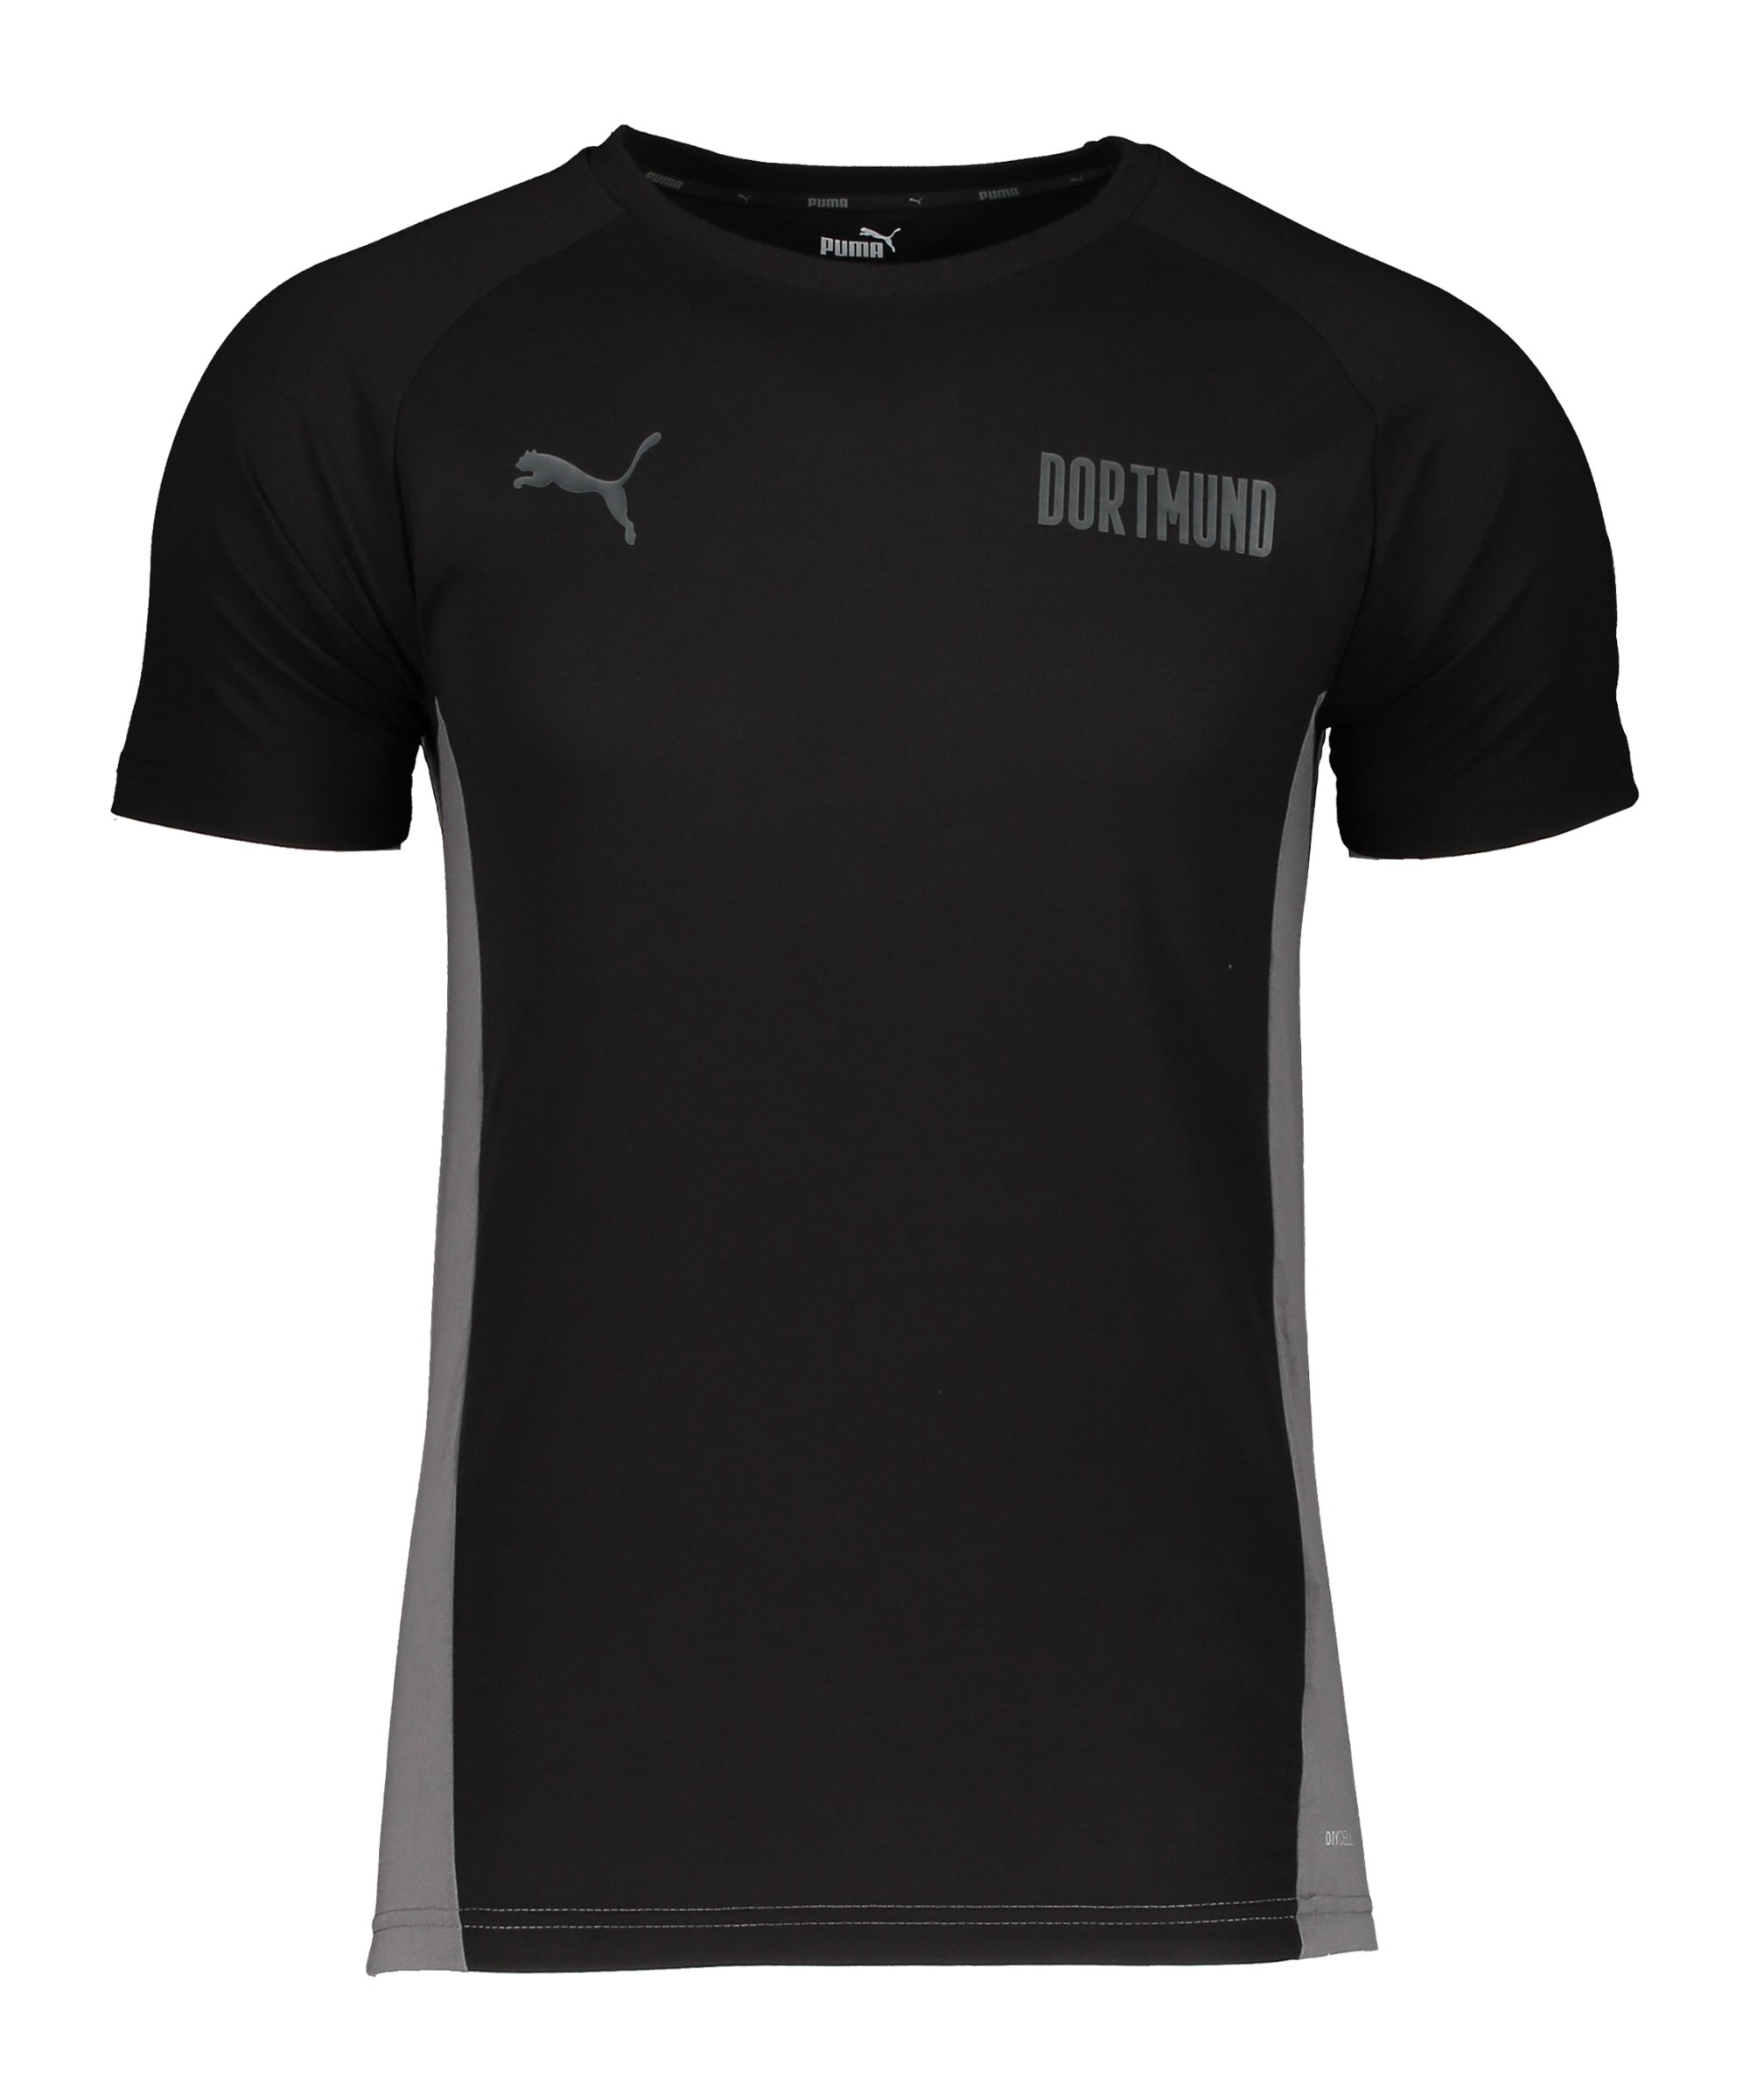 PUMA BVB Dortmund Evostripe T-Shirt Kids Schwarz F03 - schwarz